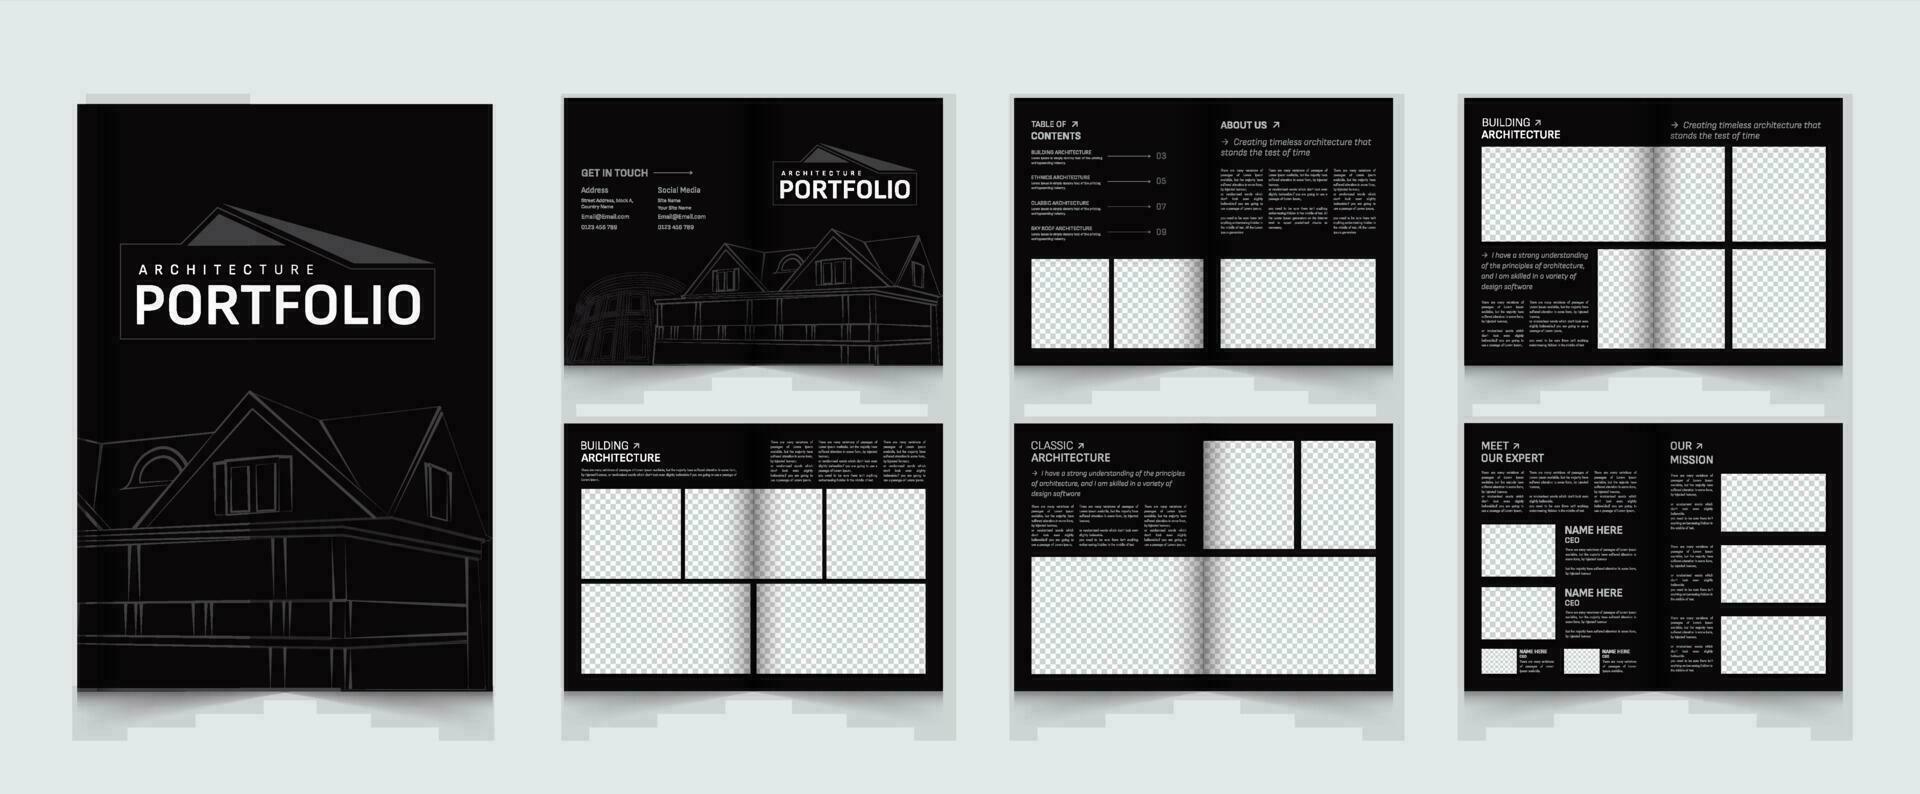 Architecture and interior portfolio or portfolio template design vector